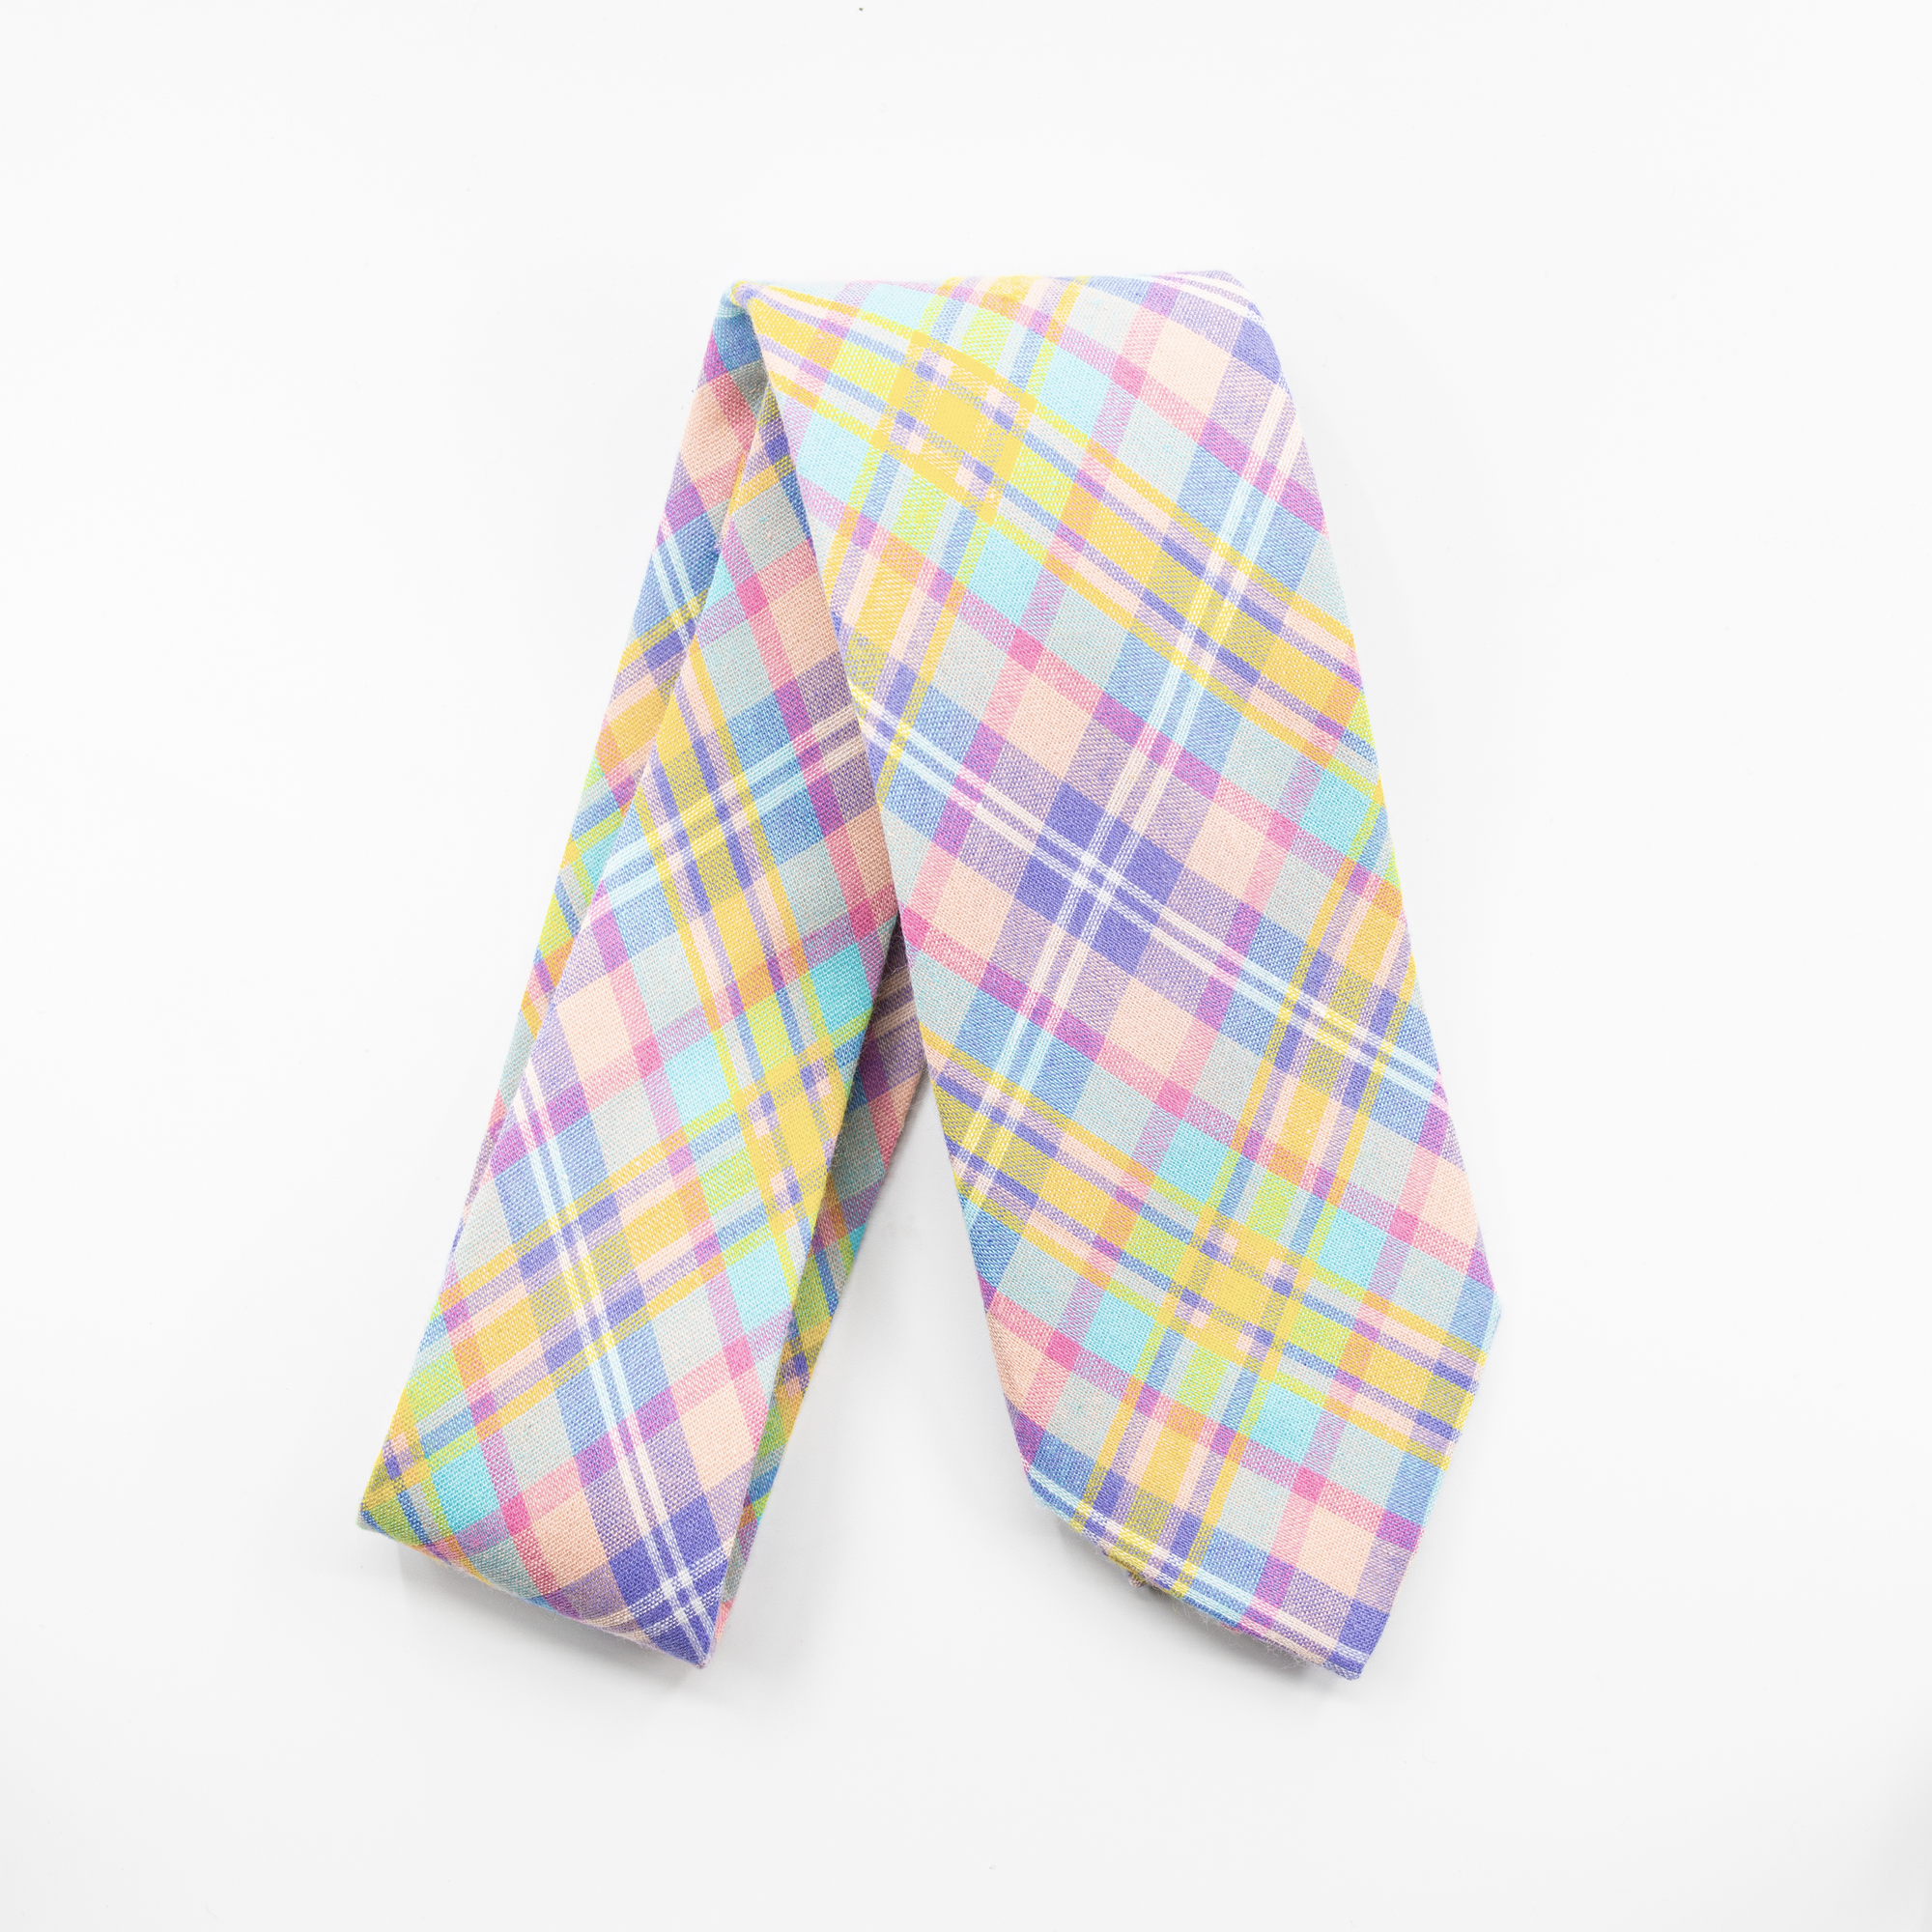 CADBURY - Men's Tie